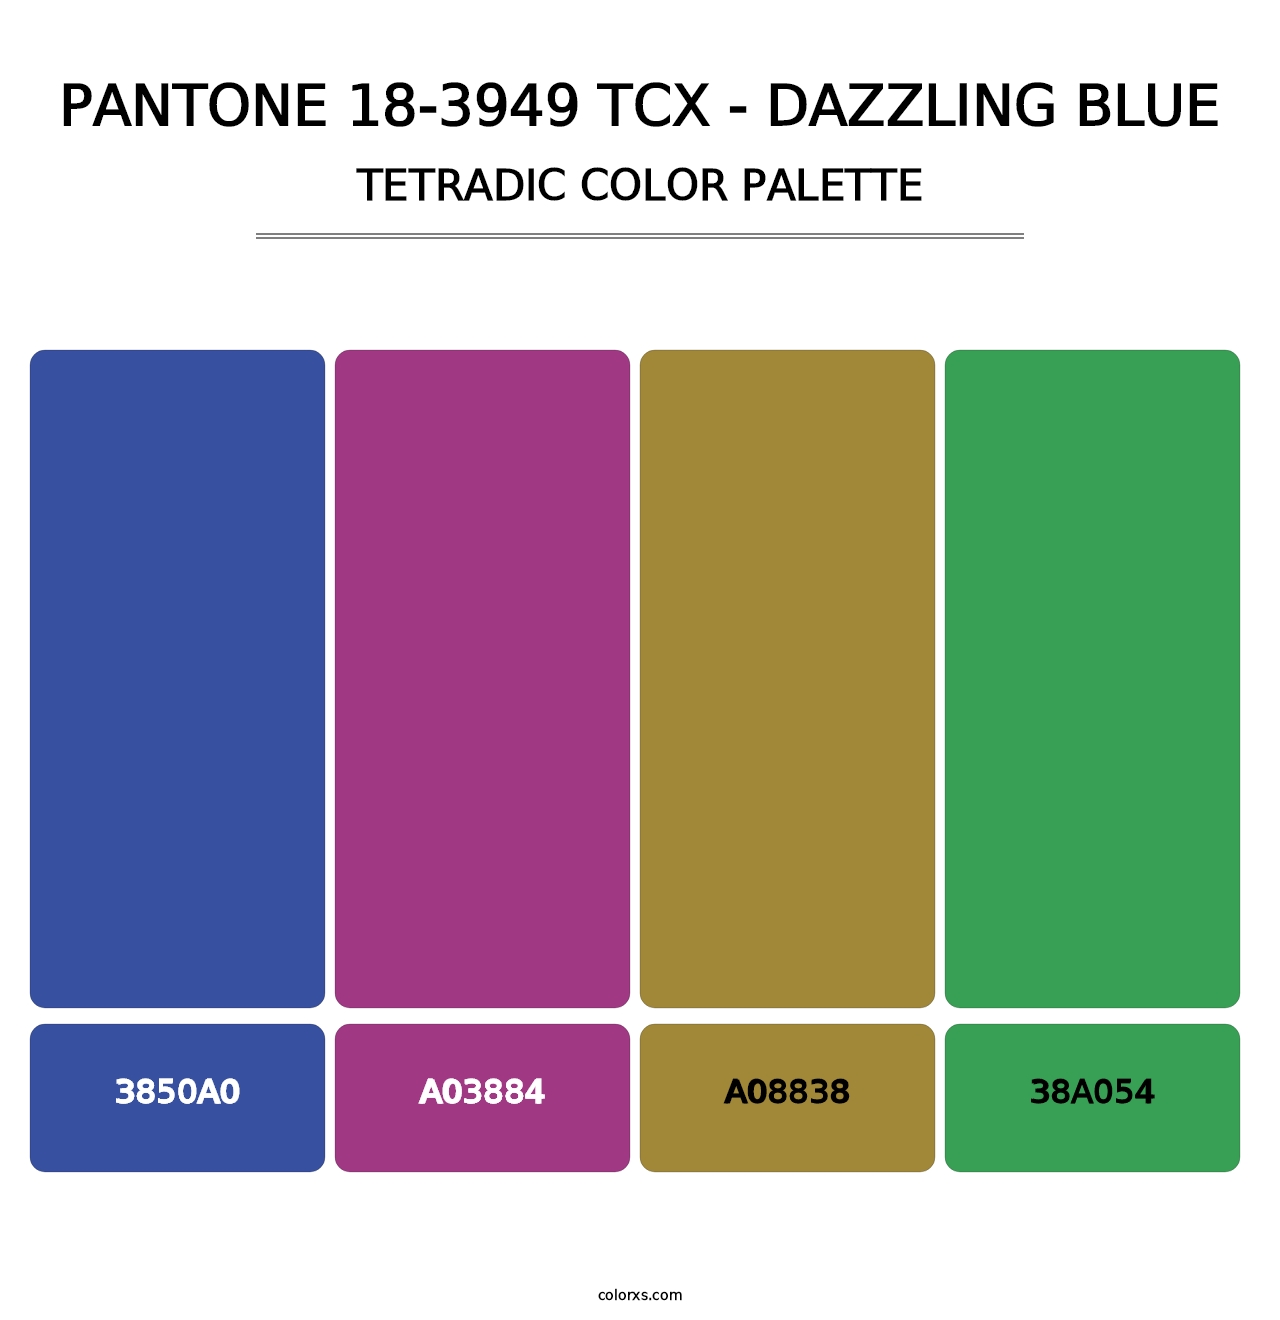 PANTONE 18-3949 TCX - Dazzling Blue - Tetradic Color Palette